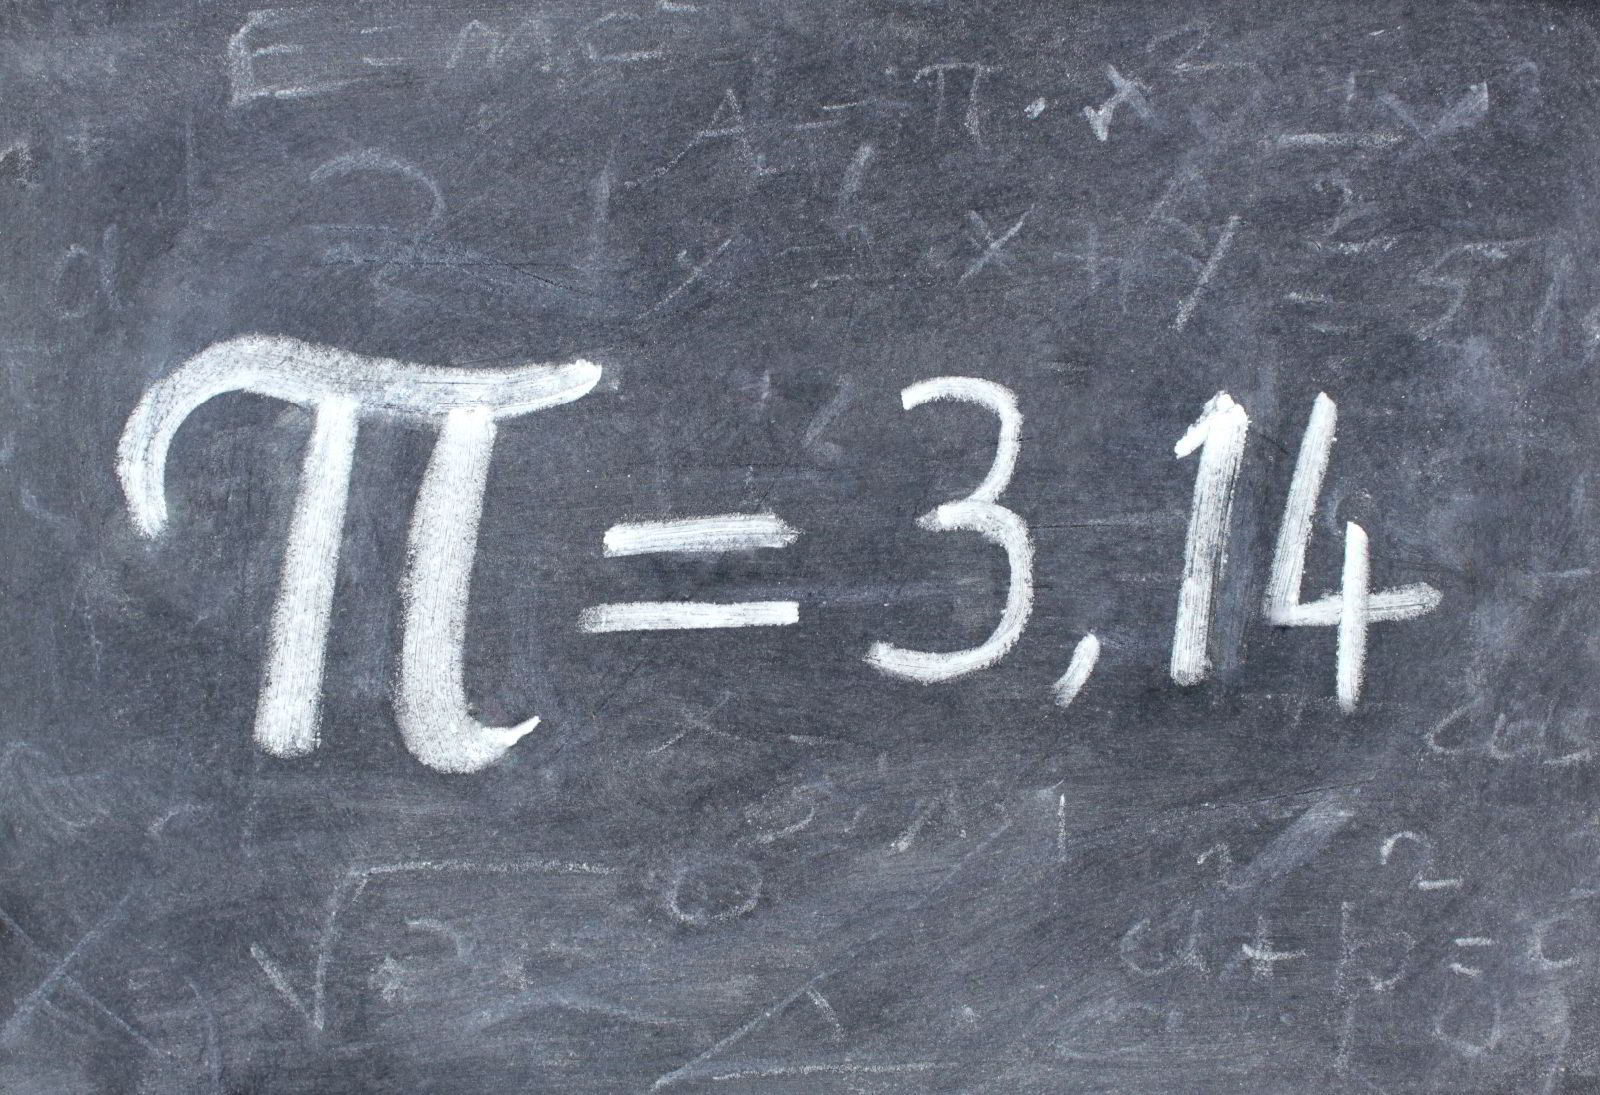 pizarrón con símbolo Pi igual a 3.14